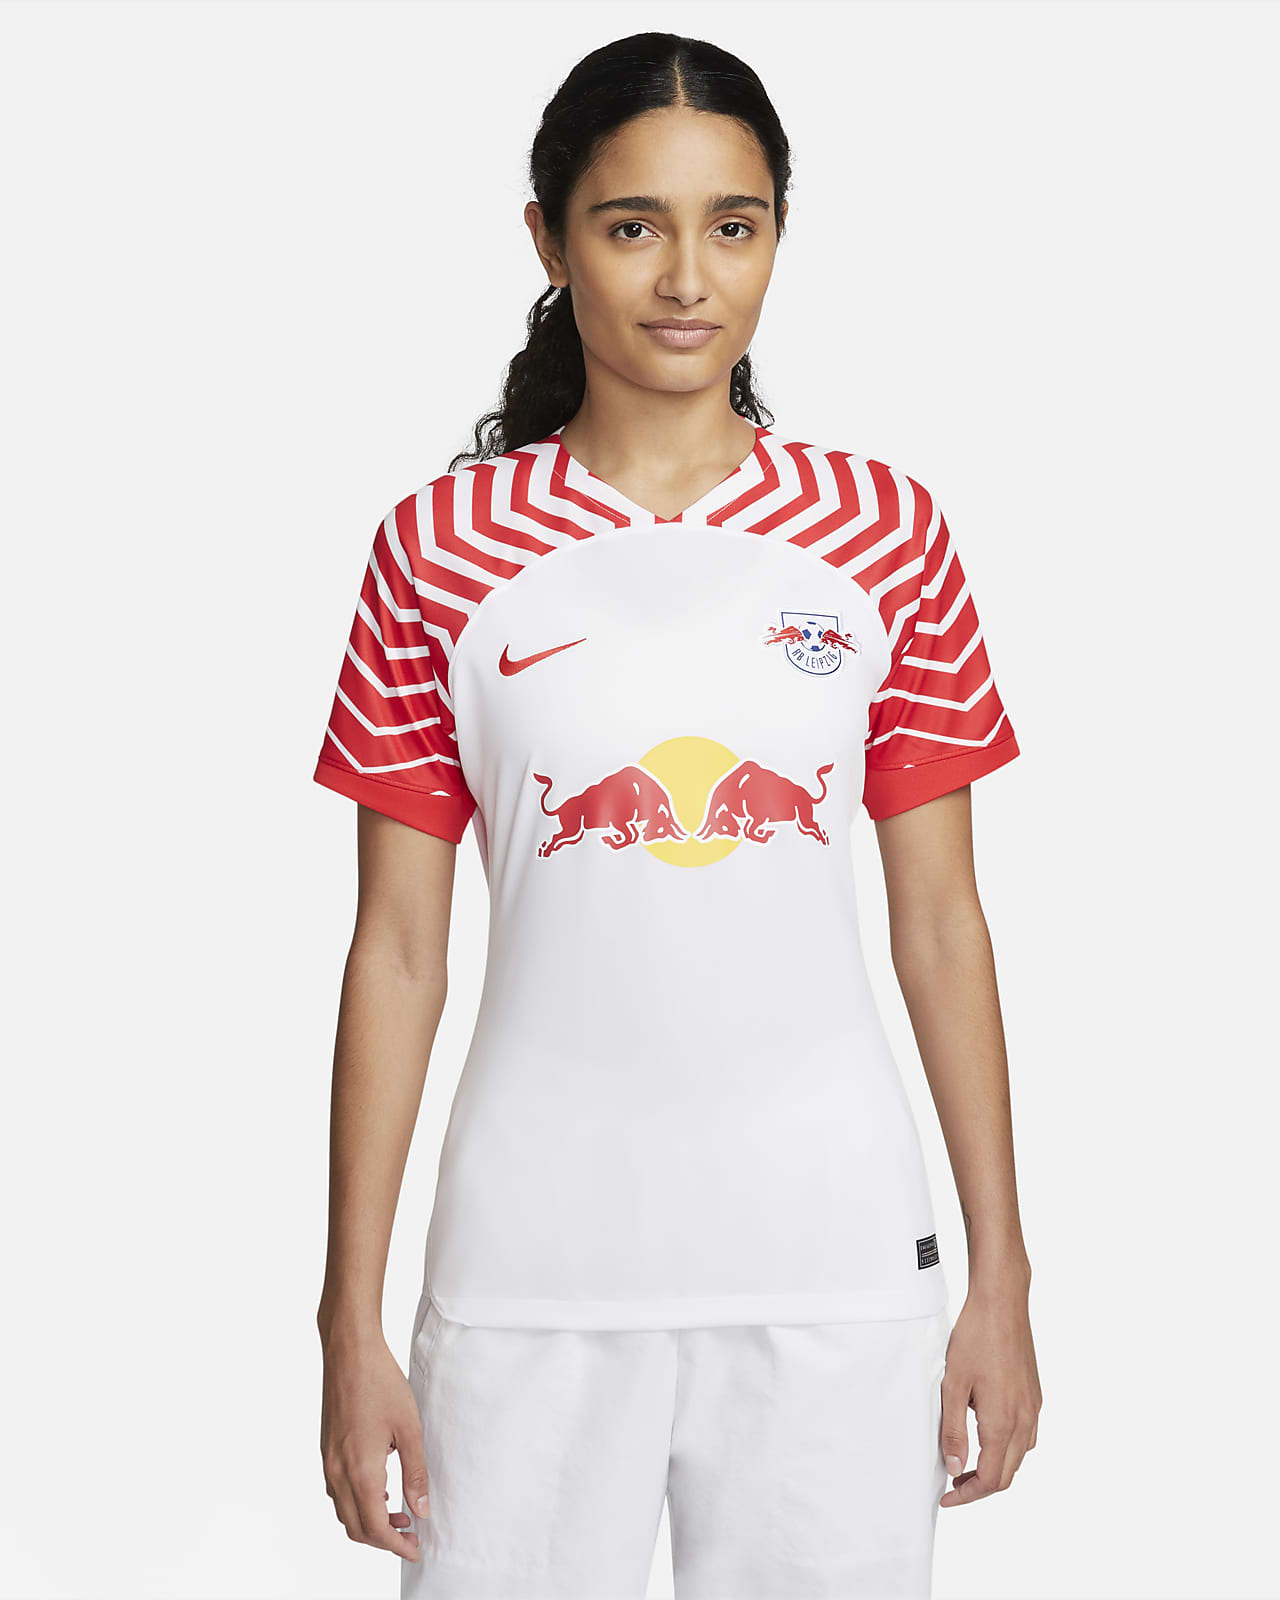 RB Leipzig 2023/24 Stadium Women's Nike Dri-FIT Football Shirt. Nike LU